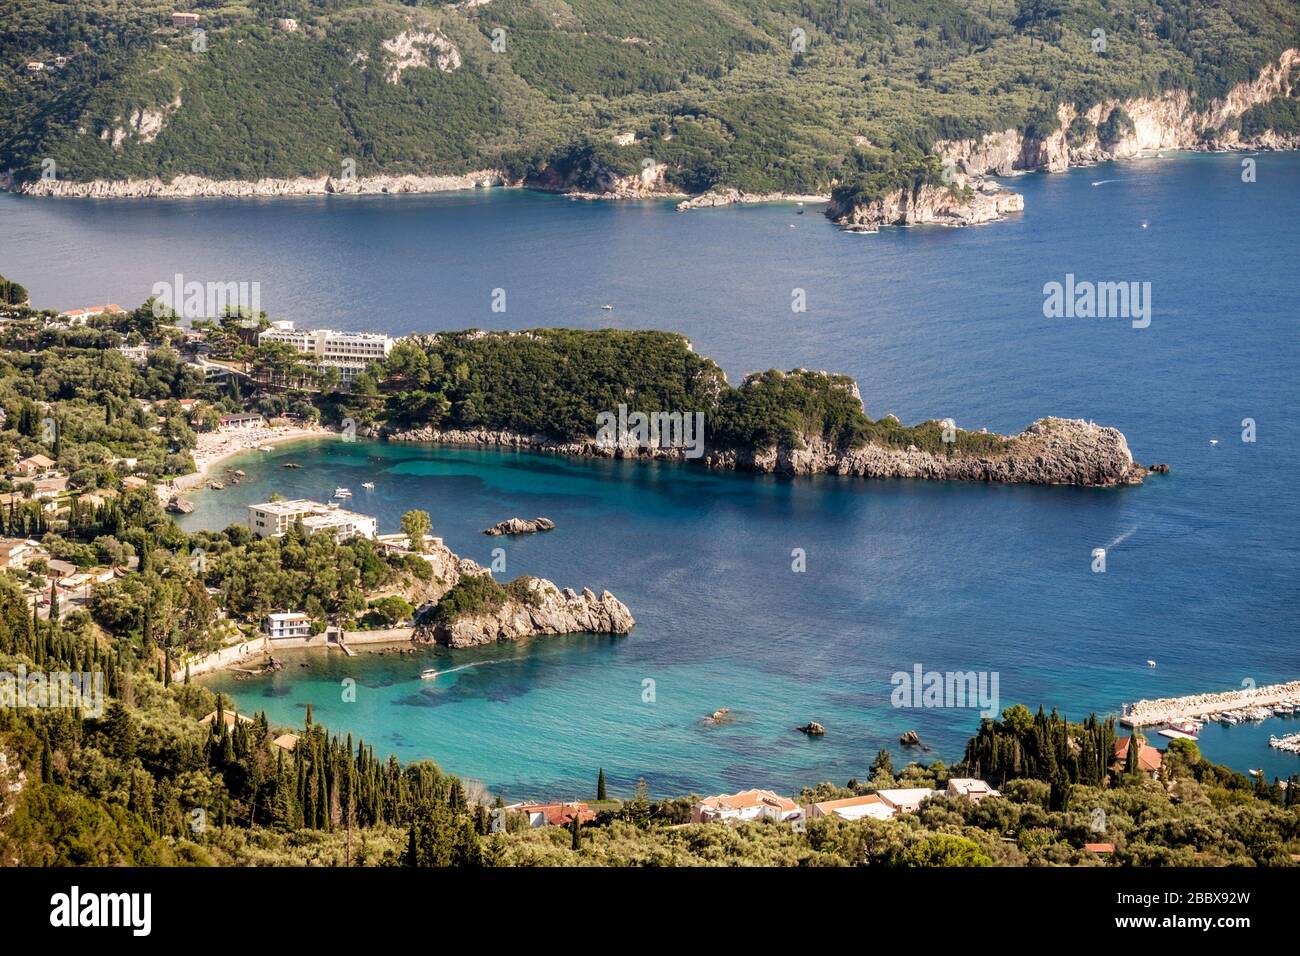 Vue sur la plage d'Agia Triada depuis la route de montagne, Corfou Grèce Banque D'Images